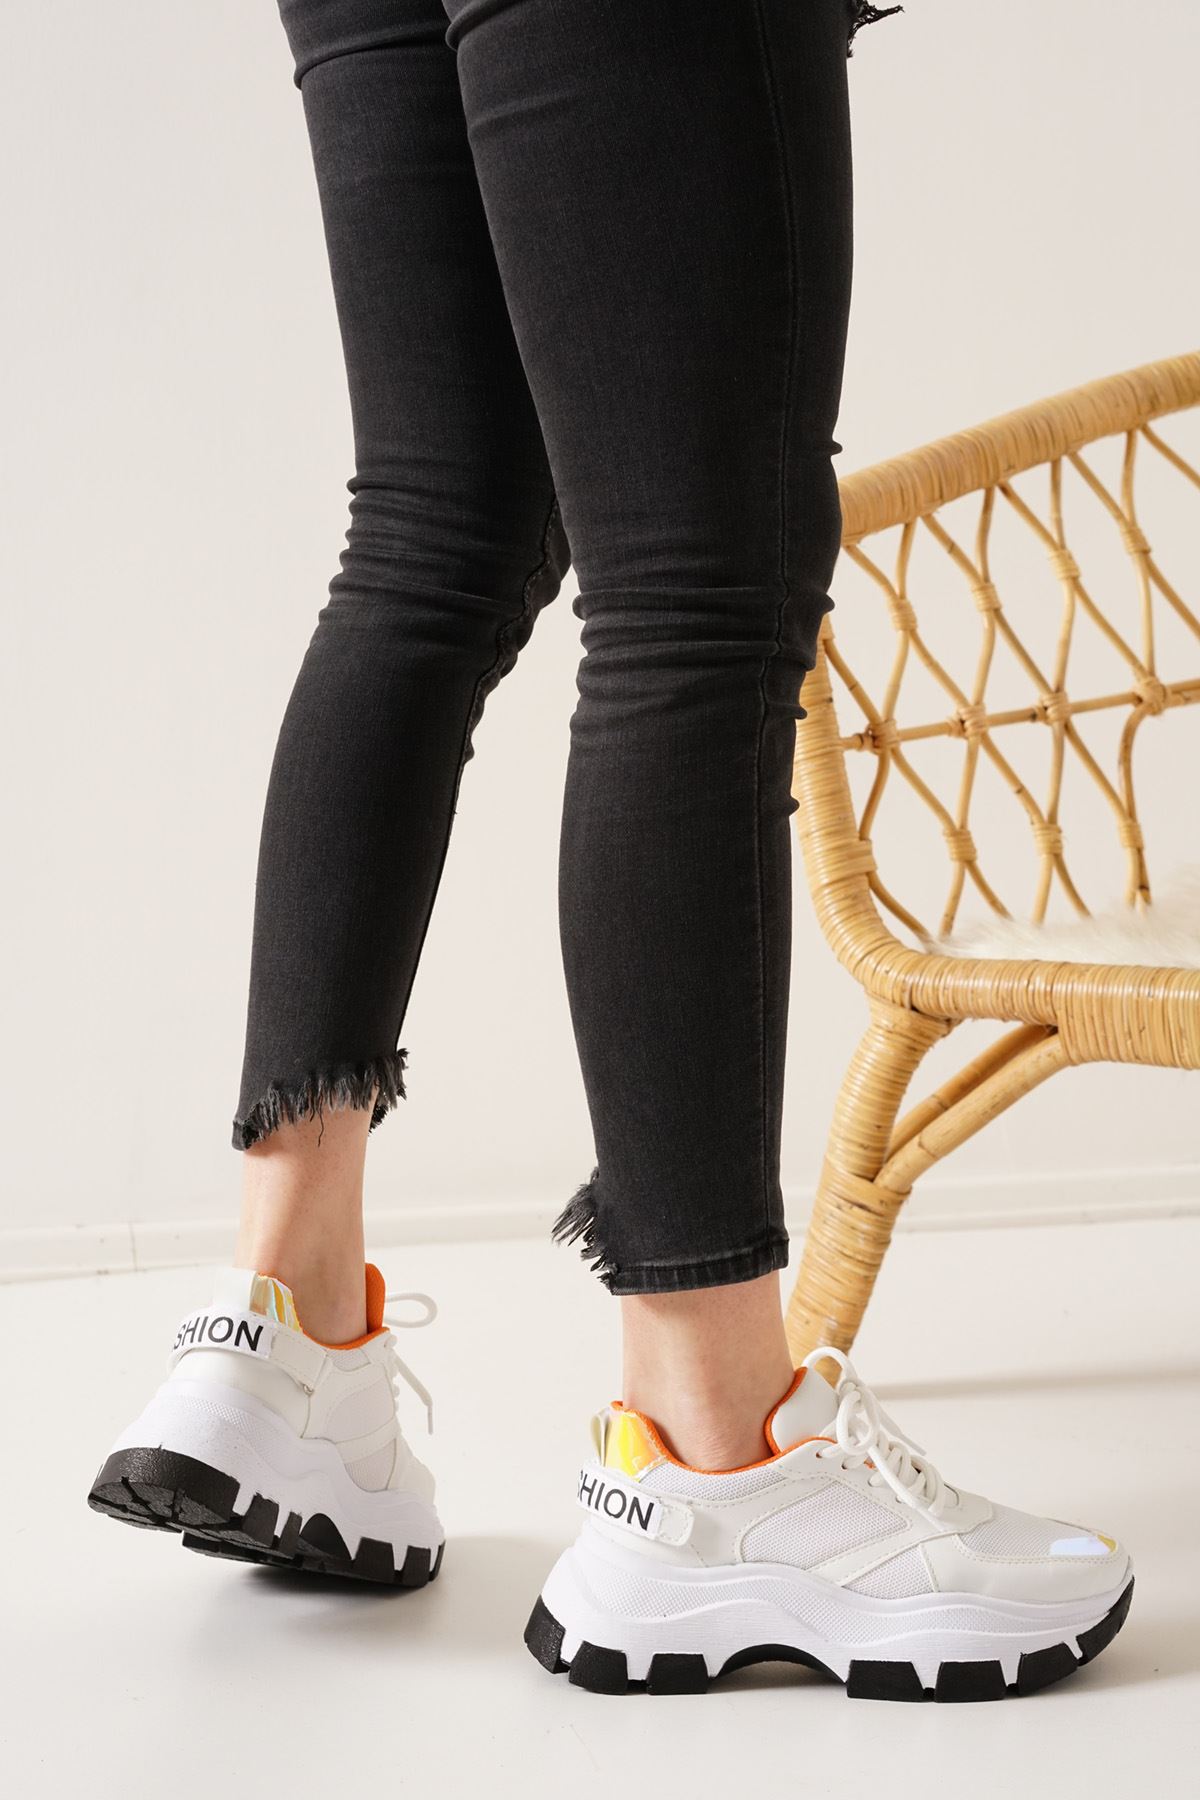 Coraline Beyaz Kadın Spor Ayakkabı